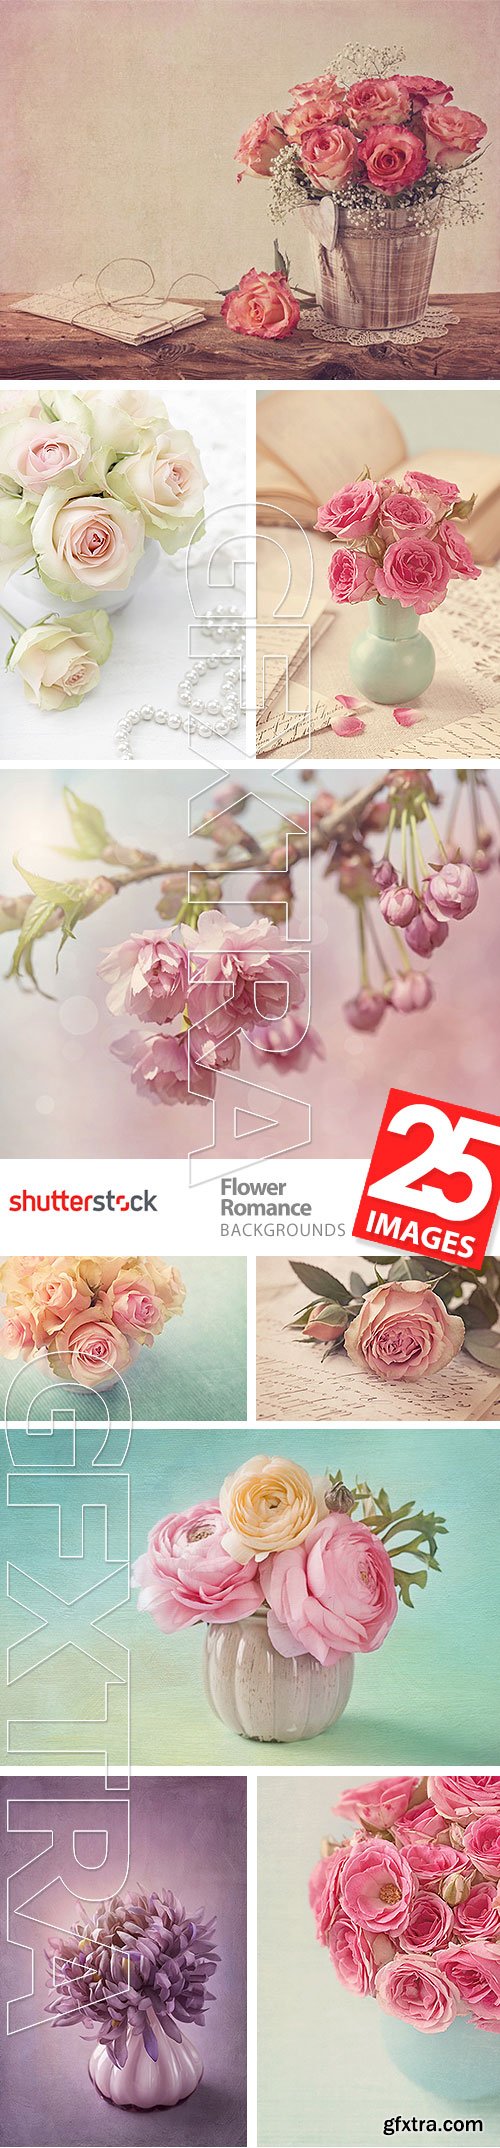 Flower Romance 25xJPG